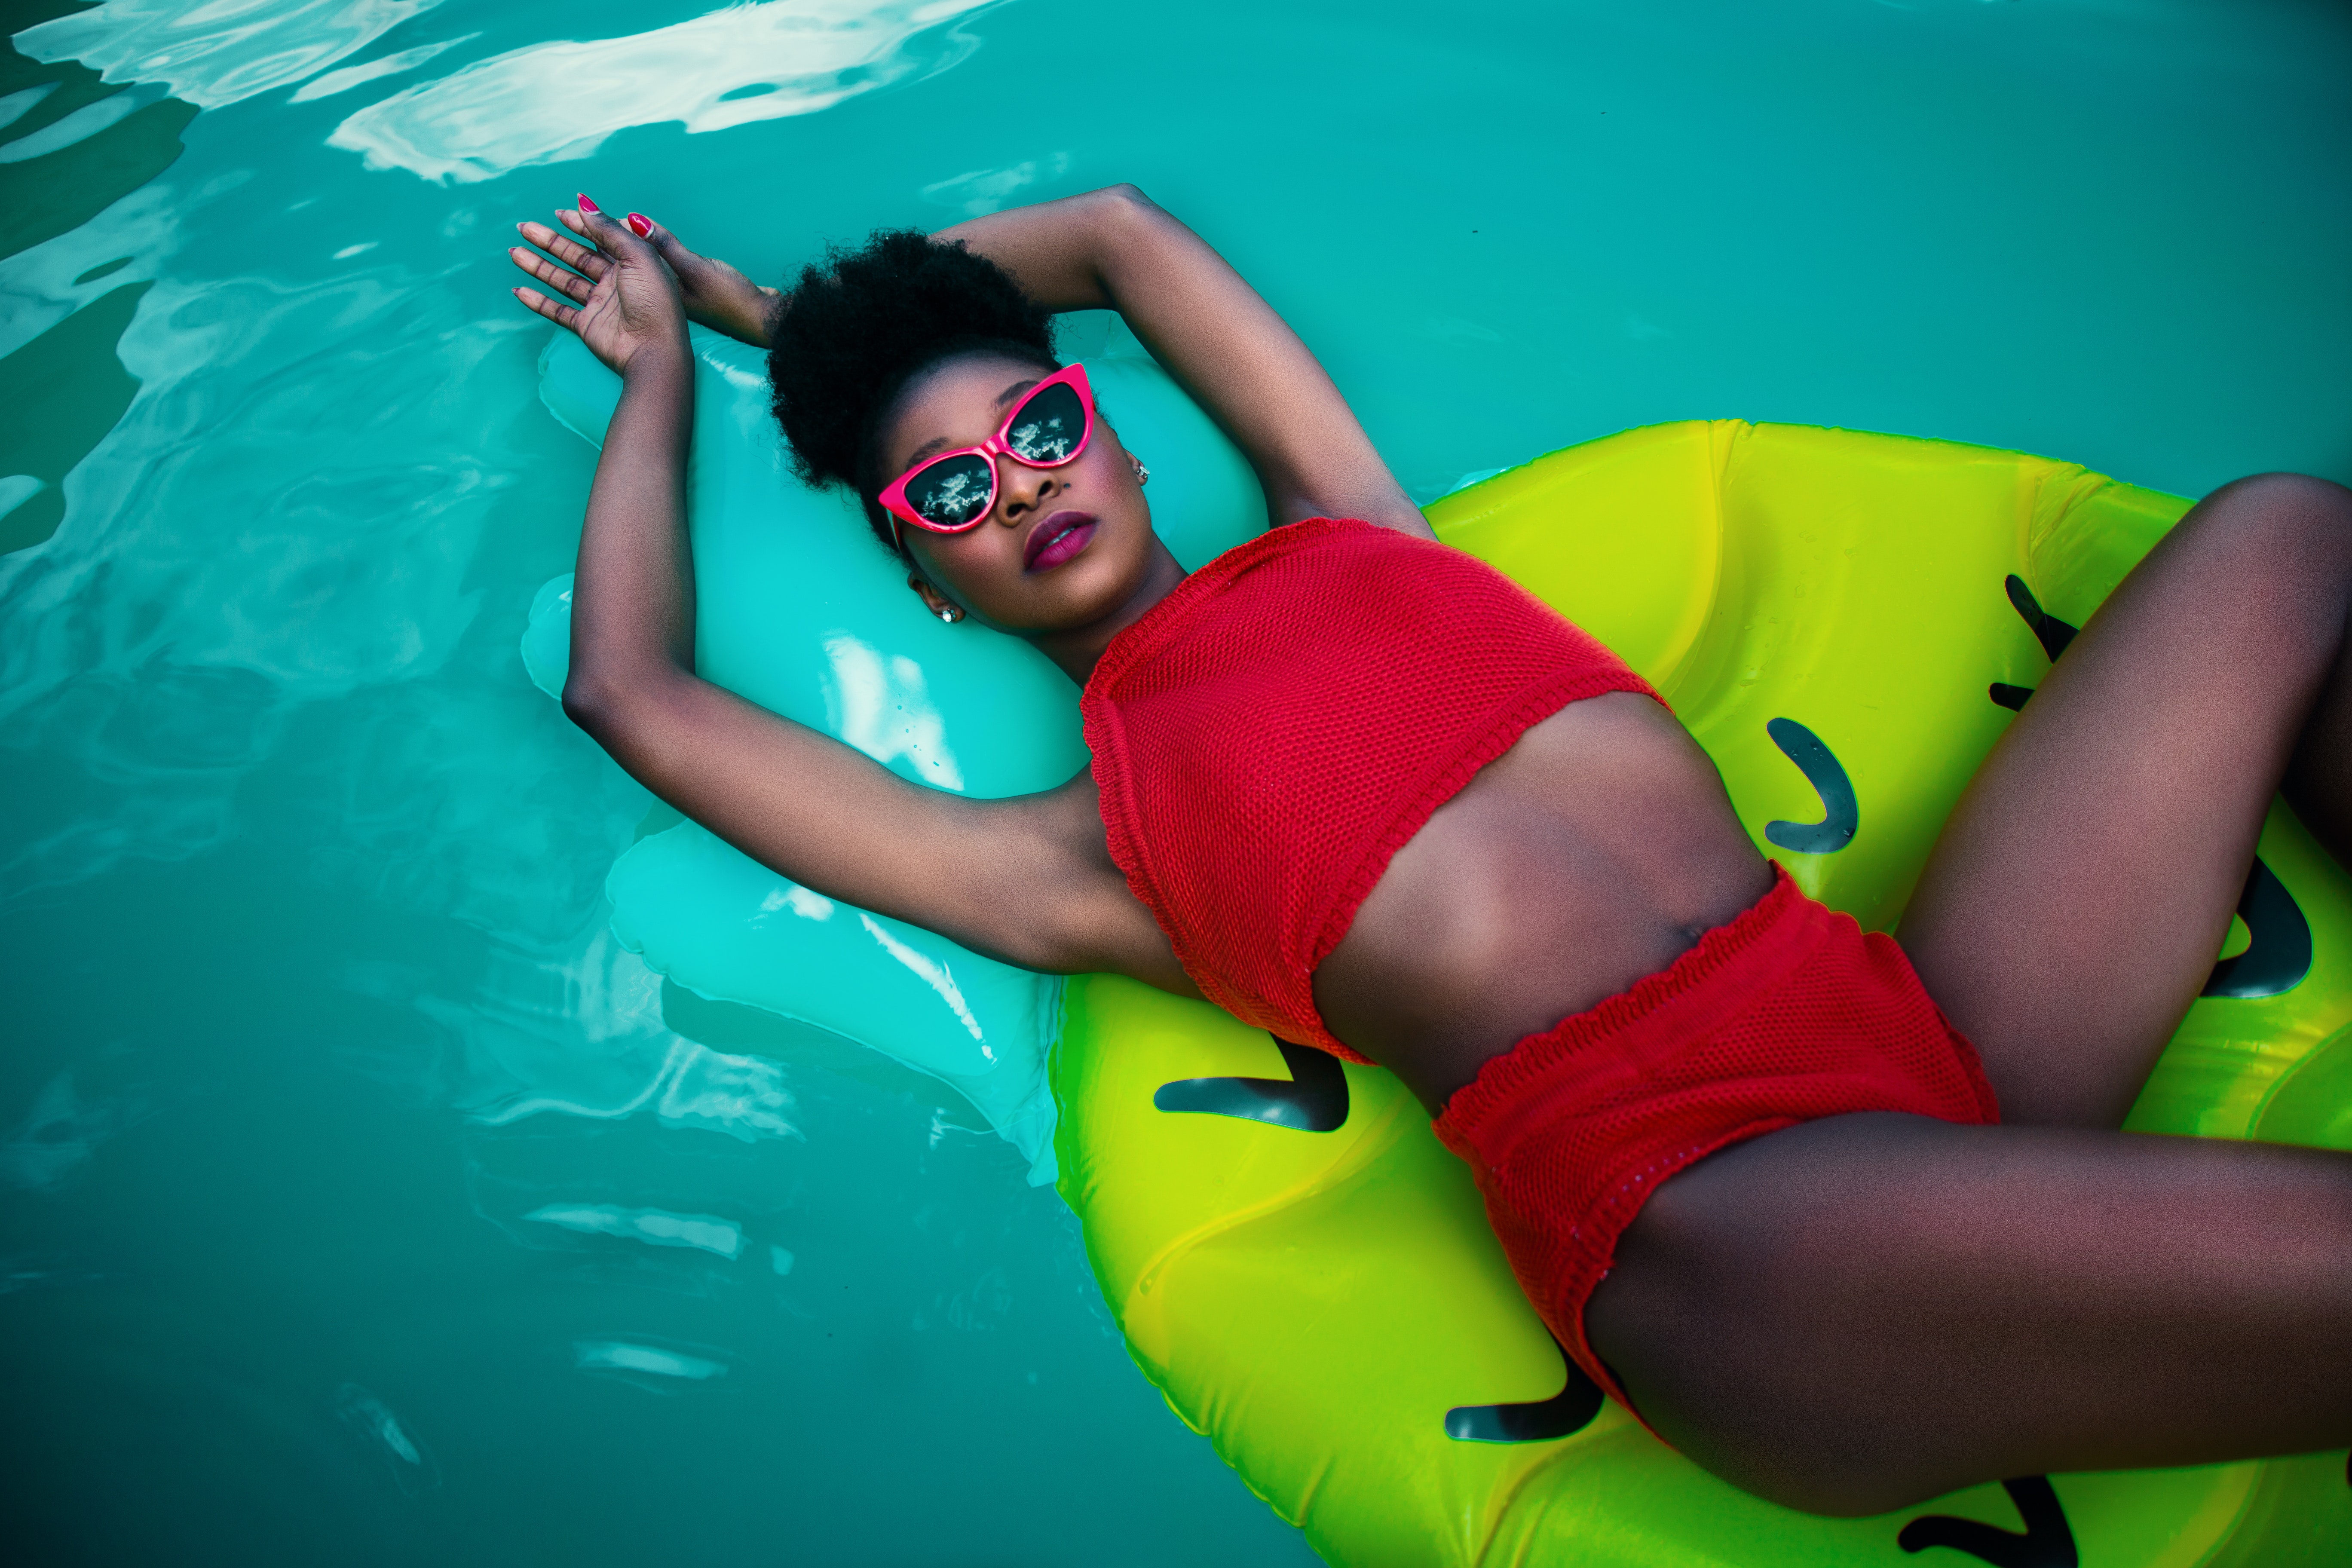 Women's red sleeveless top bikini photo